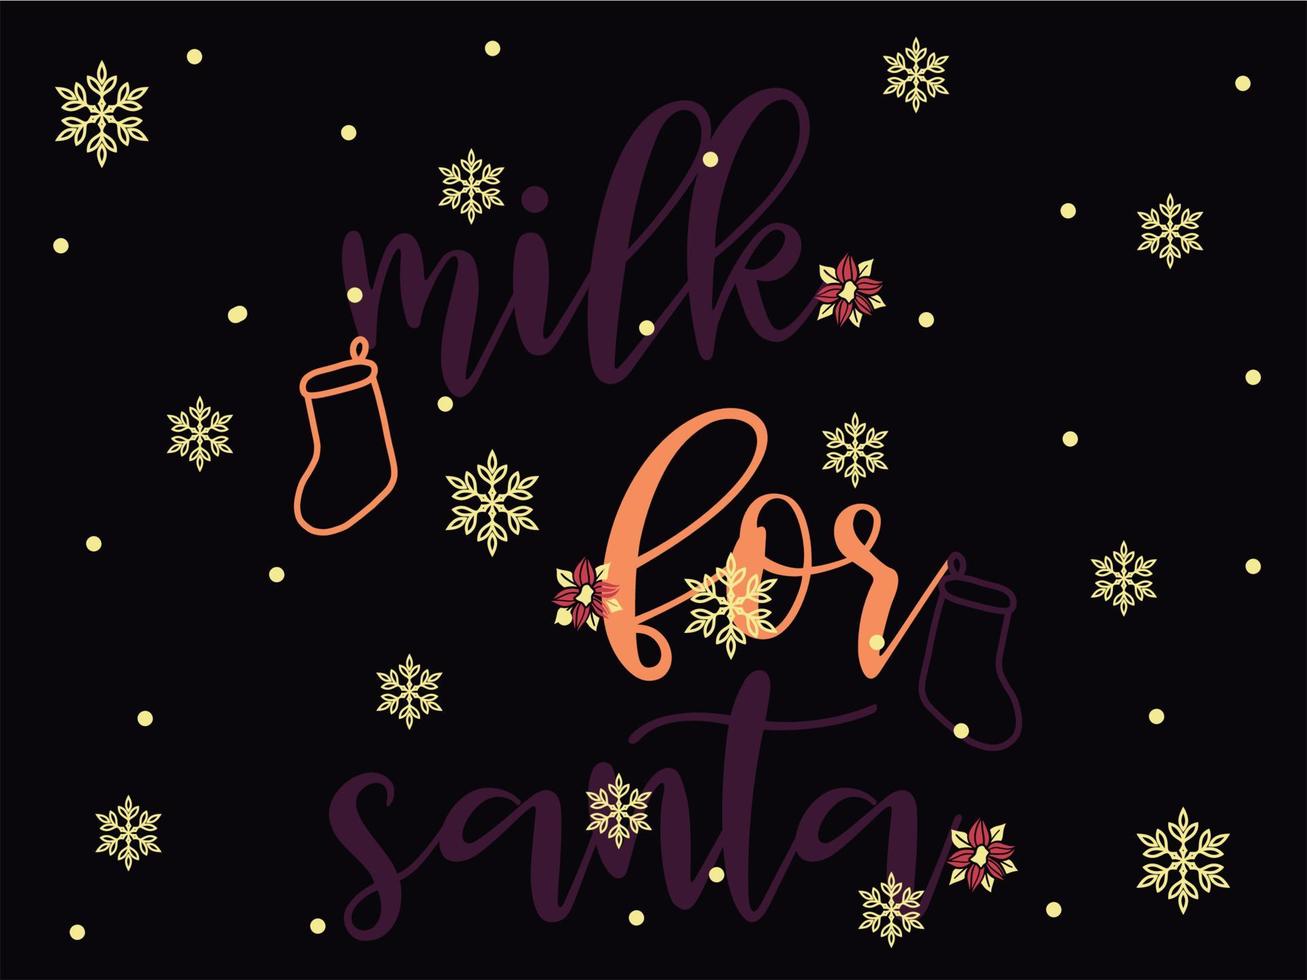 milch für den weihnachtsmann 03 frohe weihnachten und frohe feiertage typografie-set vektor